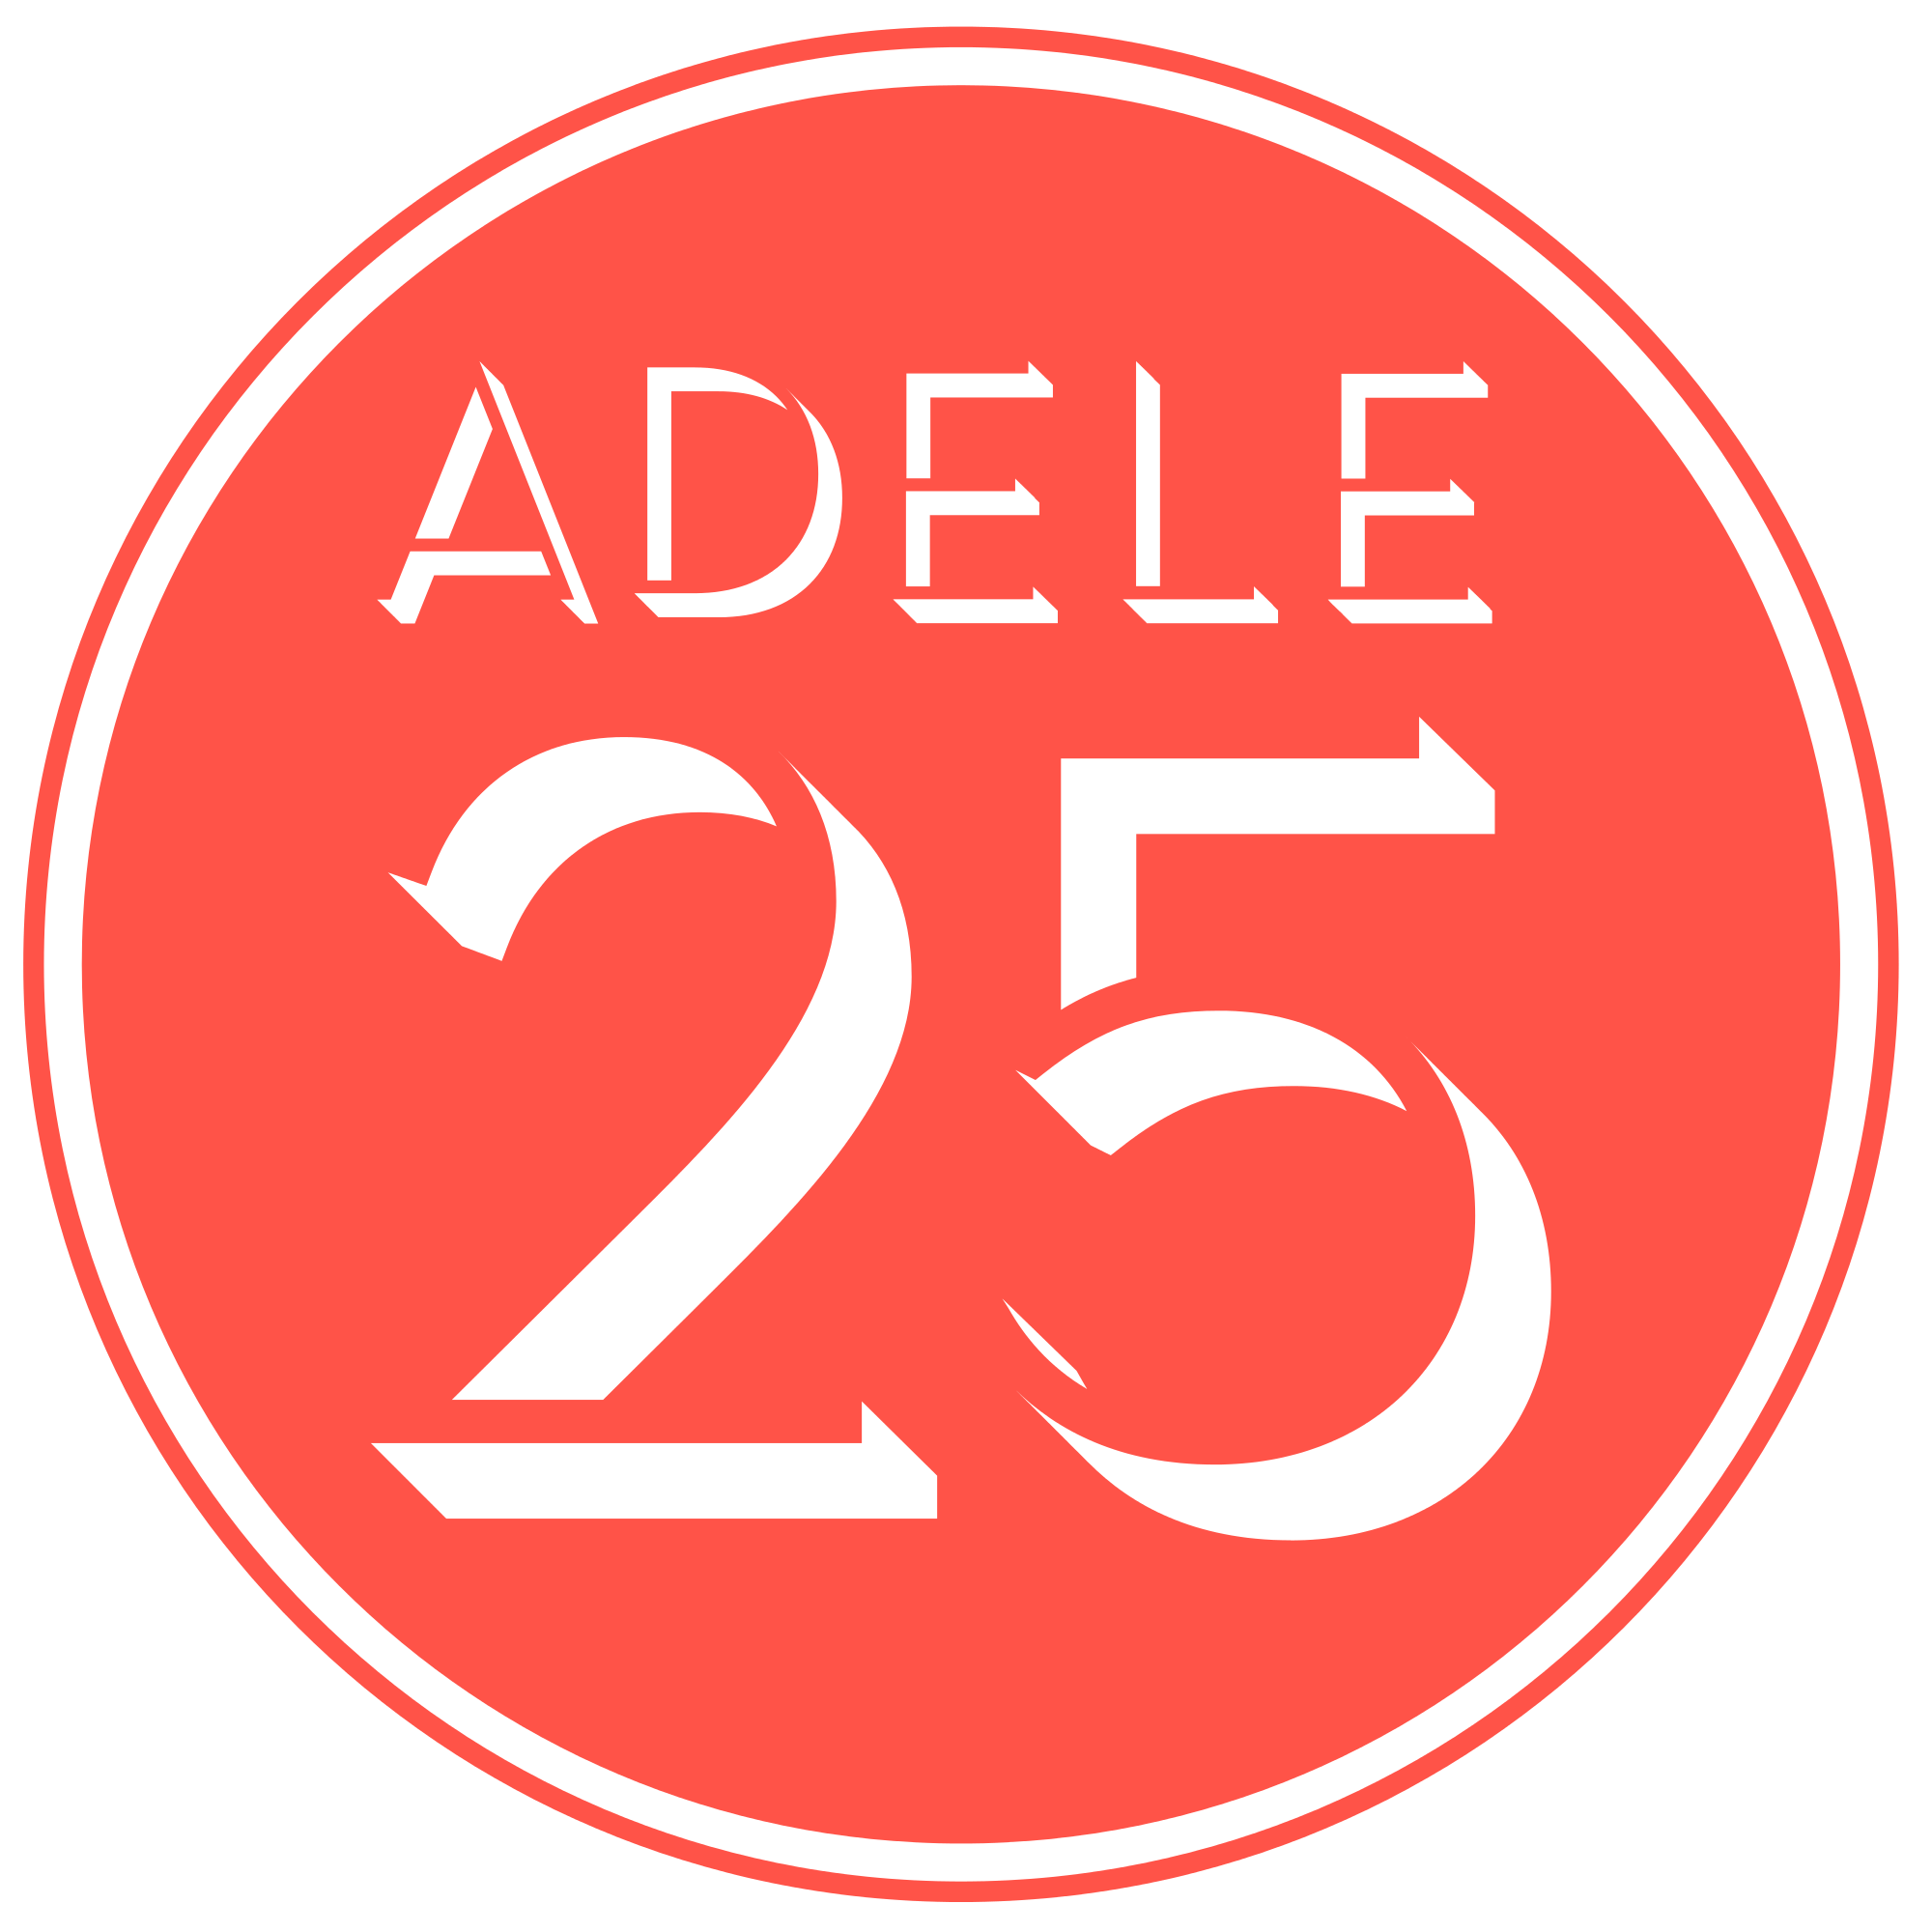 25 Logo - File:Adele 25 Logo.svg - Wikimedia Commons